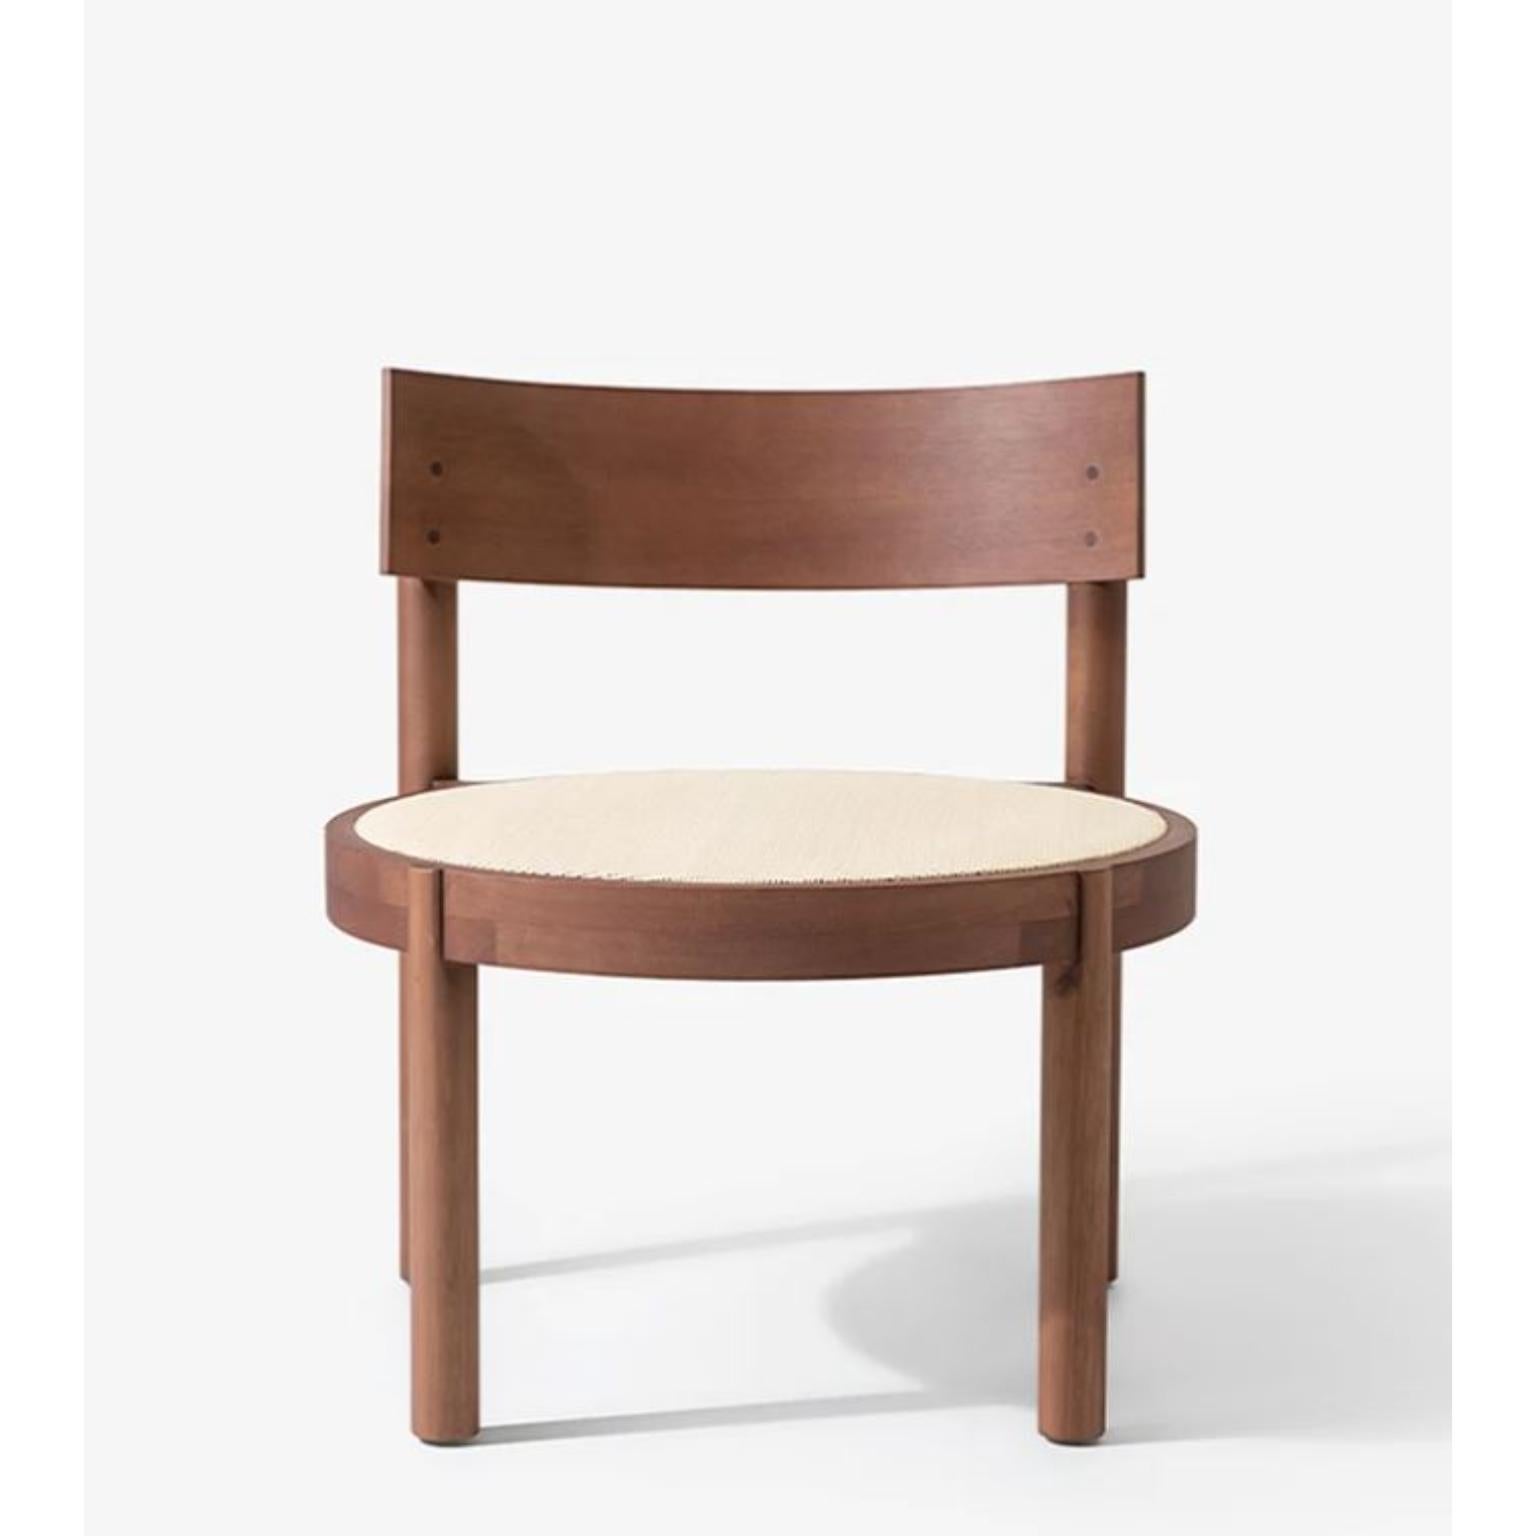 Brauner Gravatá Sessel von Wentz
Abmessungen: T 64 x B 60 x H 67 cm
MATERIALIEN: Tauari-Holz, Rohr/Polsterung.
Gewicht: 6,6kg / 14,5 lbs

Die Gravatá-Serie ist eine Synthese unserer Vision von funktionaler und visueller Einfachheit der Möbel. Mit